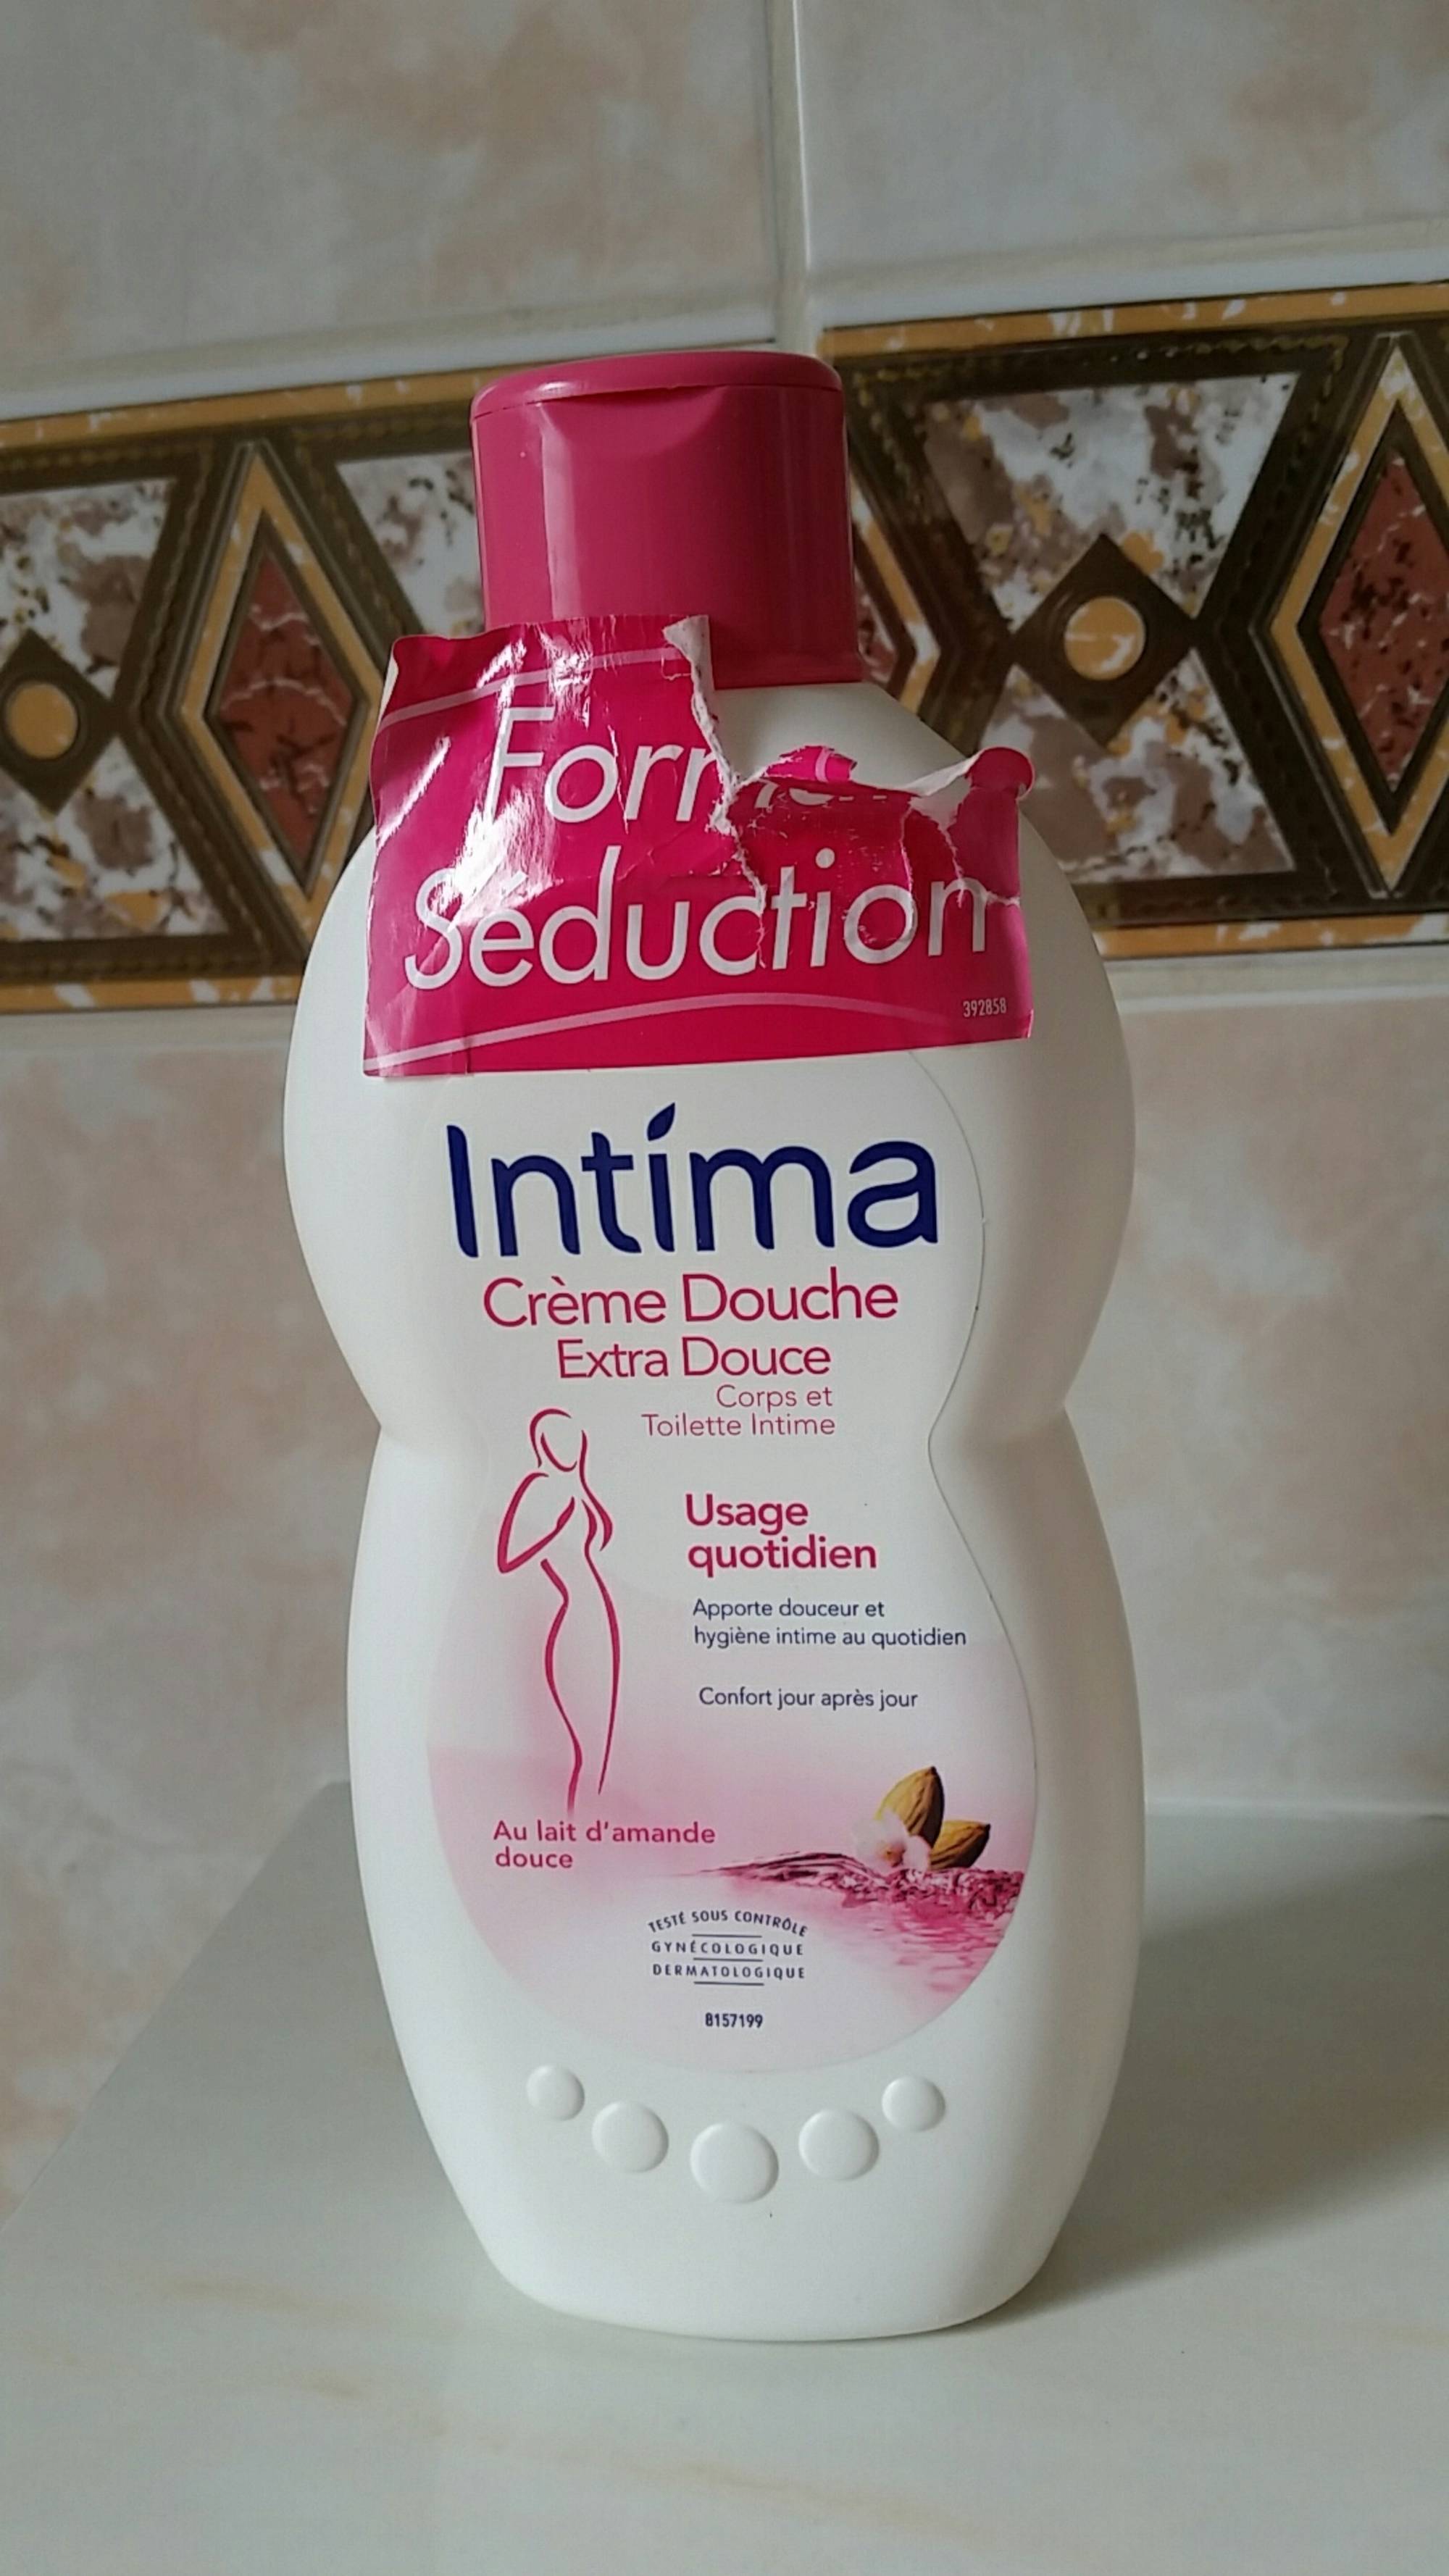 INTIMA - Crème douche extra douce - Corps et toilette intime